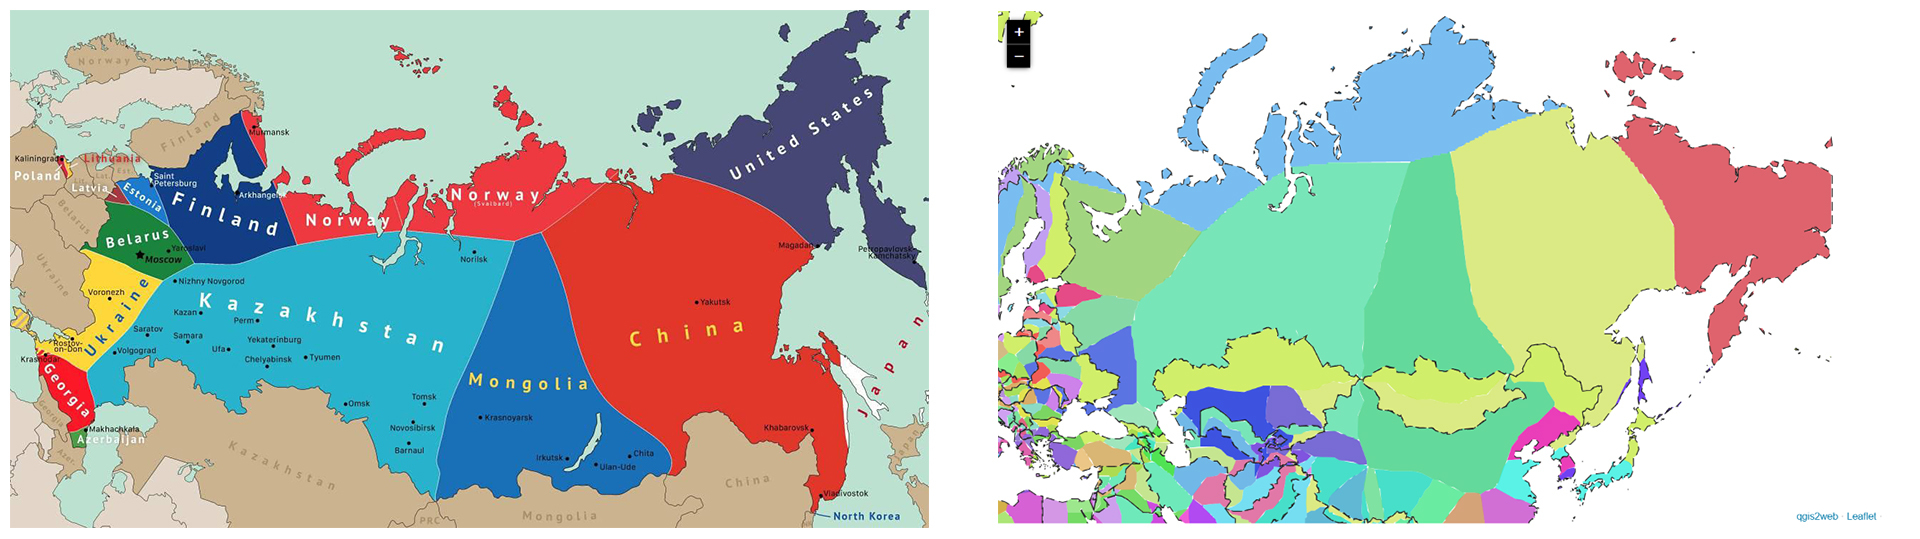 Podział Rosji na mapie rozsyłanej na Twitterze (z lewej) pokrywa się z tym, co pokazano na GitHub